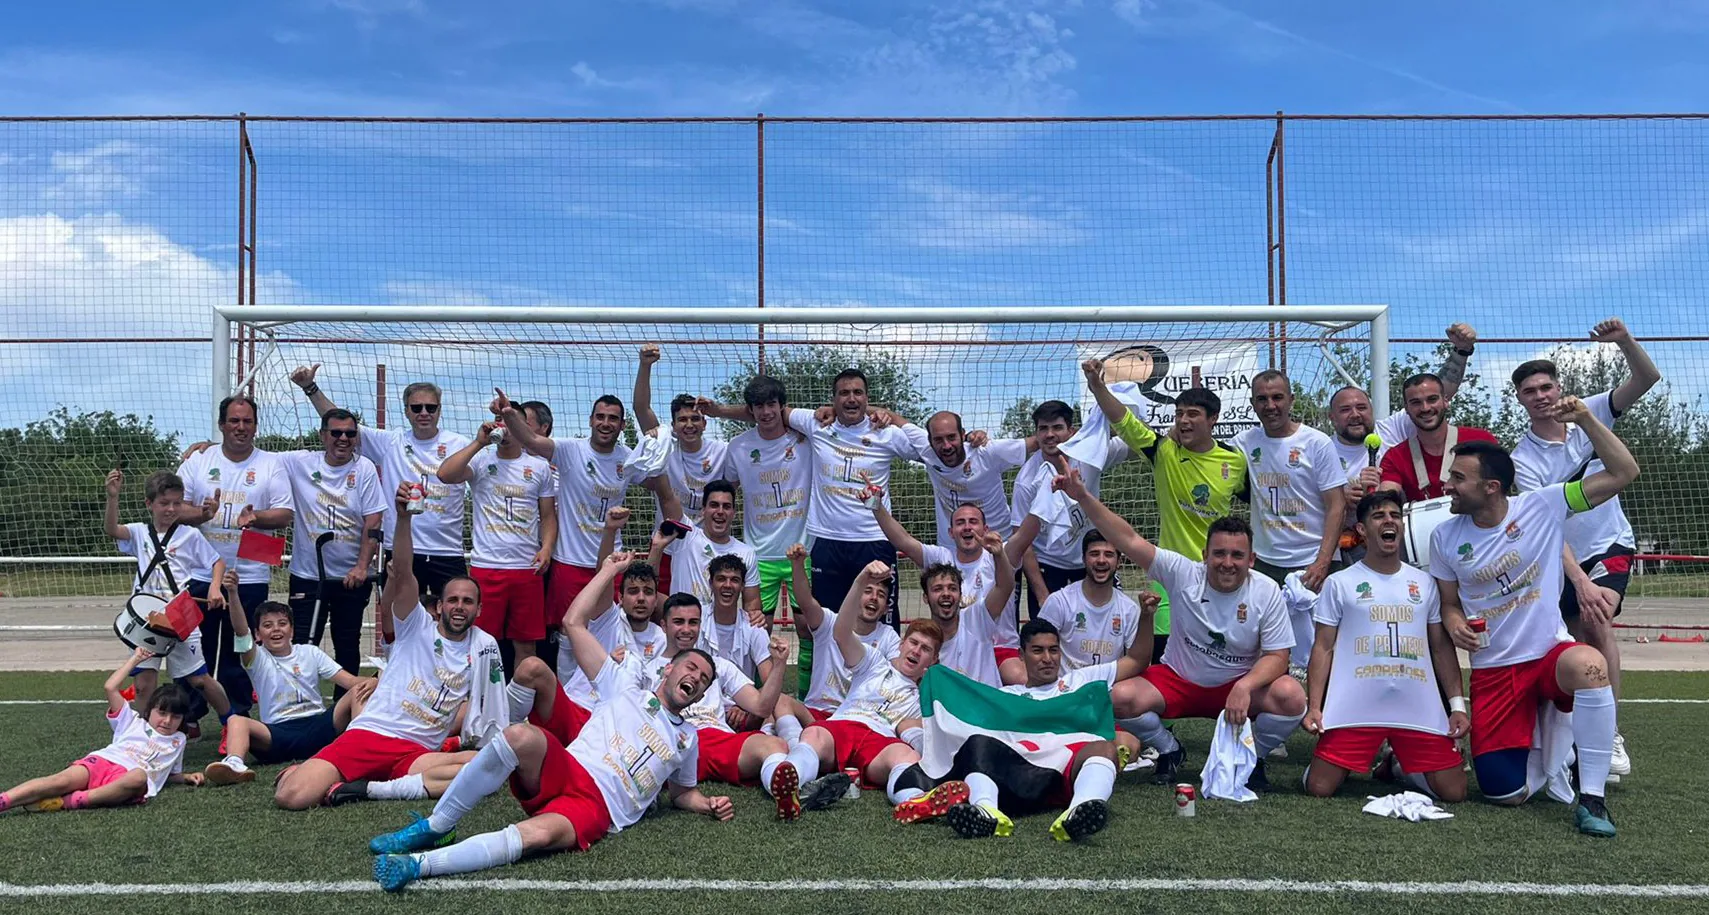 El Club Fútbol Casar de Cáceres Sotobosque ya es equipo de Primera Extremeña tras lograr el ascenso